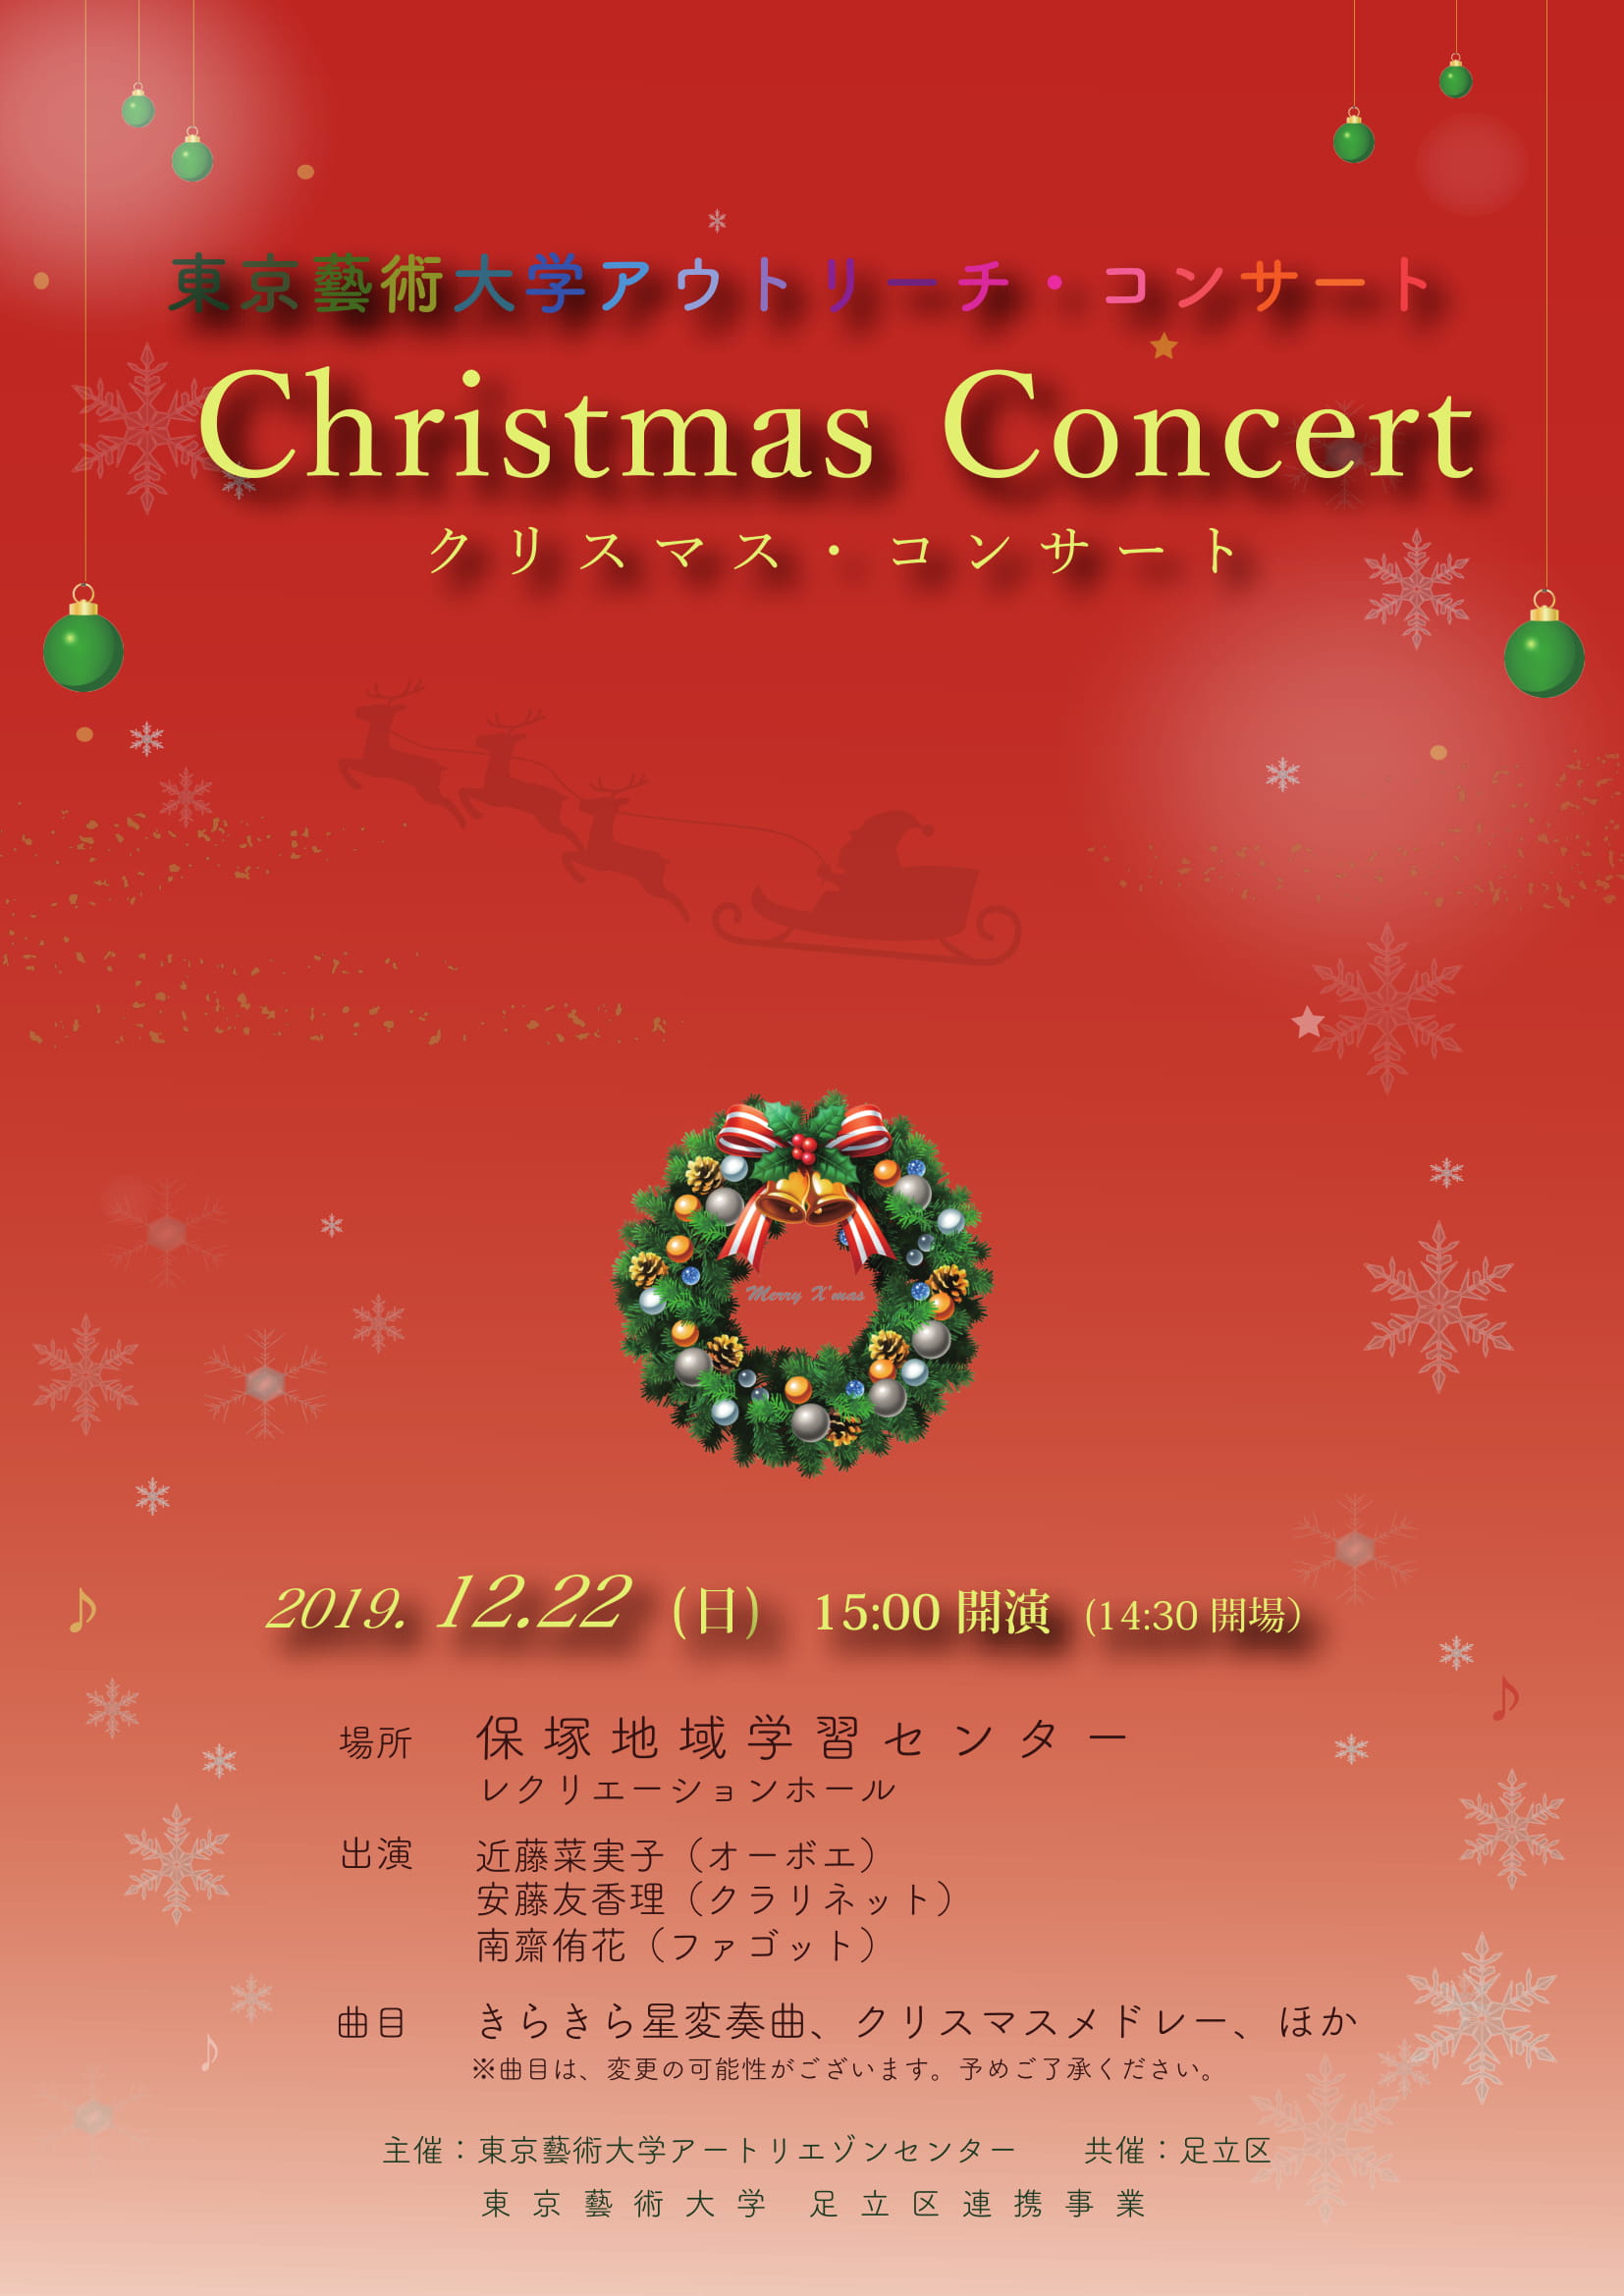 東京藝術大学アウトリーチ コンサート クリスマス コンサート Art Liaison Center アートリエゾンセンター